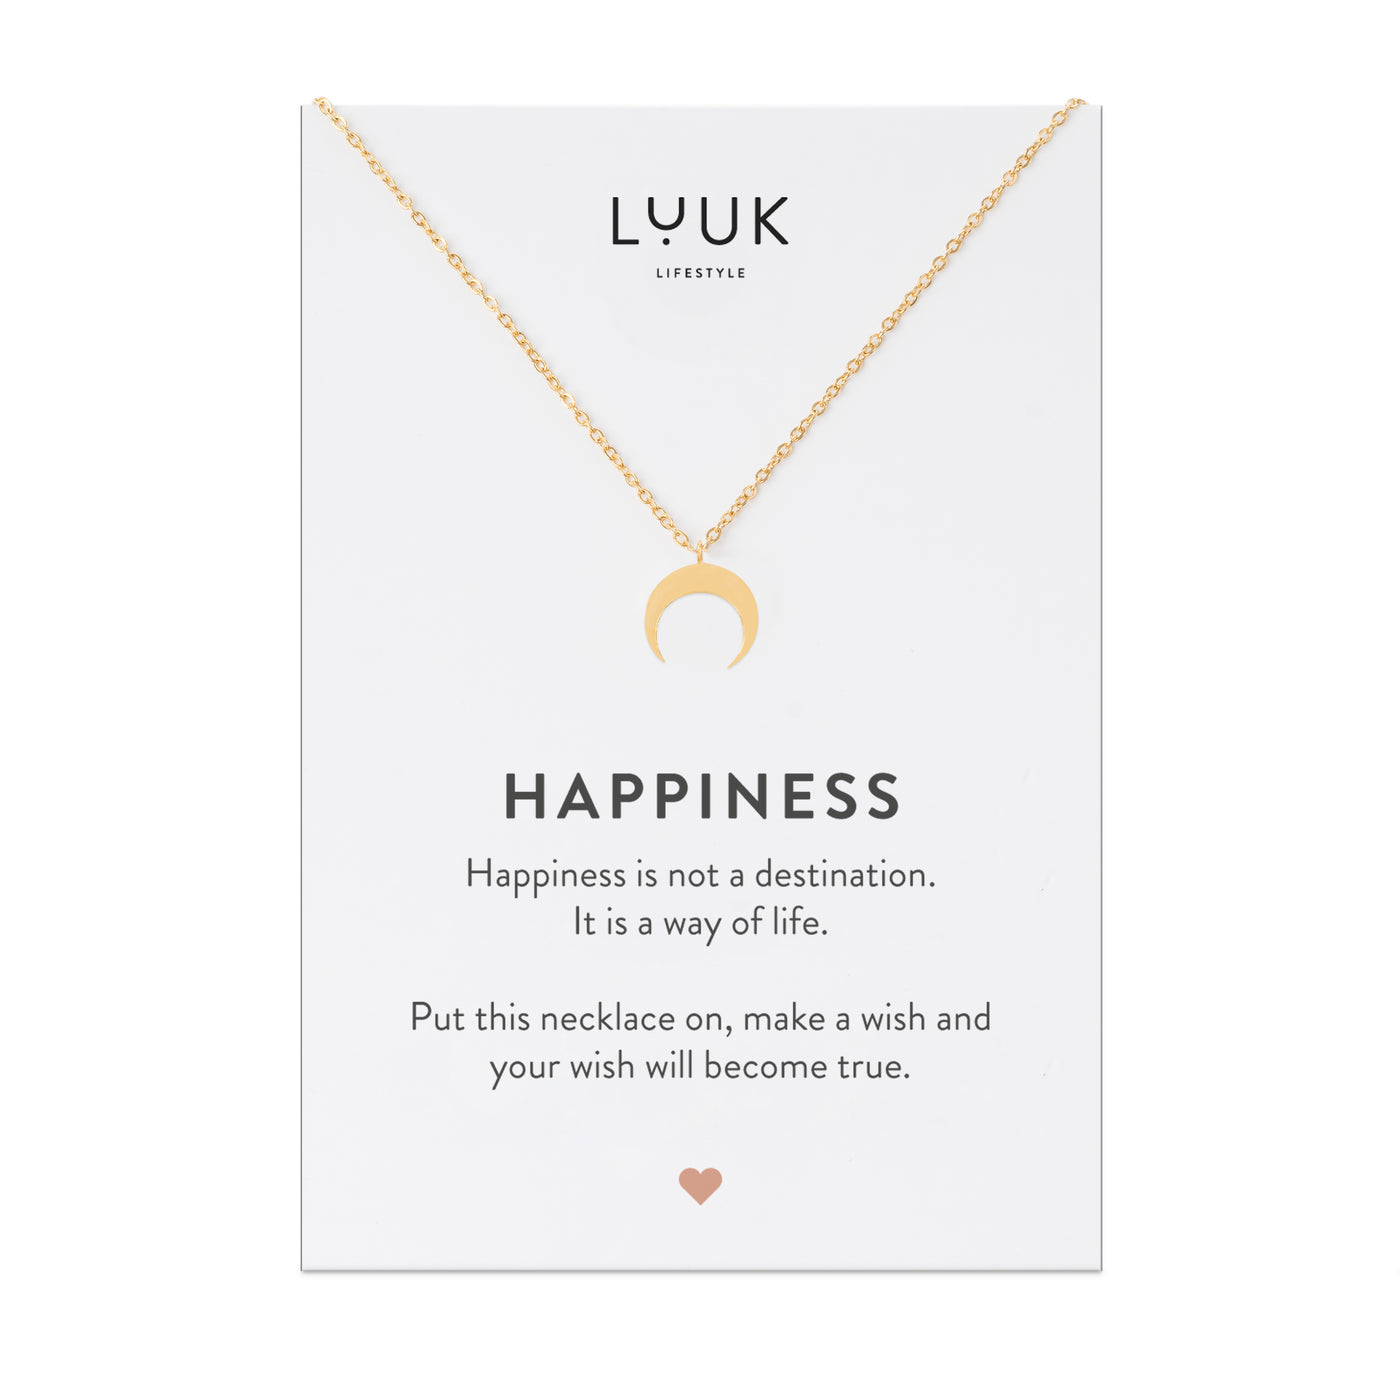 Goldene Halskette mit Mond Anhänger auf Happiness Karte von der Brand Luuk Lifestyle